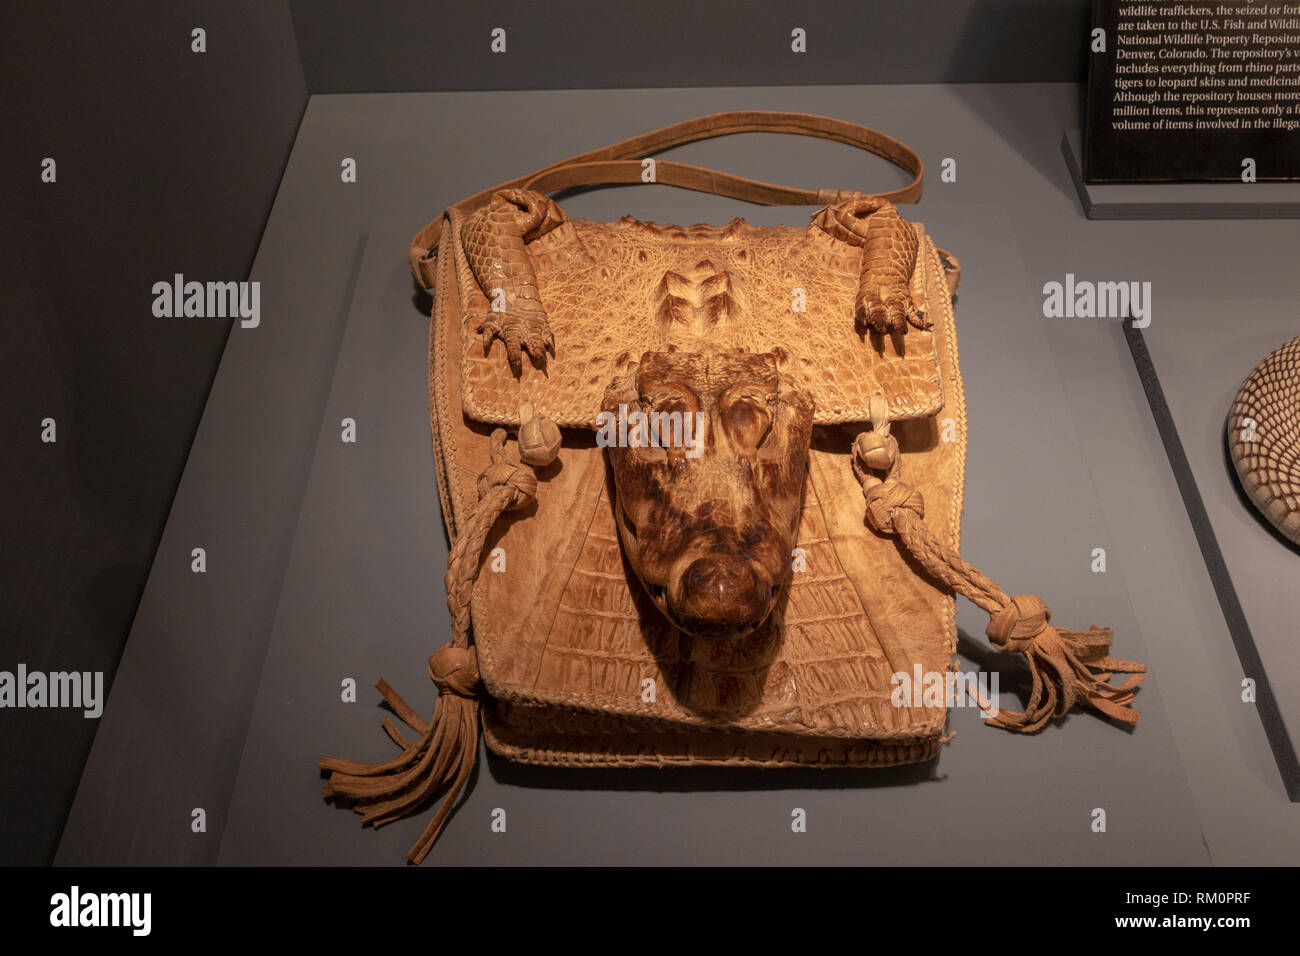 Nana africana di pelle di coccodrillo purse, parte dell'illegale commercio di specie selvatiche effettuata dalla mafia, il mob Museum, Las Vegas, Nevada, Stati Uniti. Foto Stock